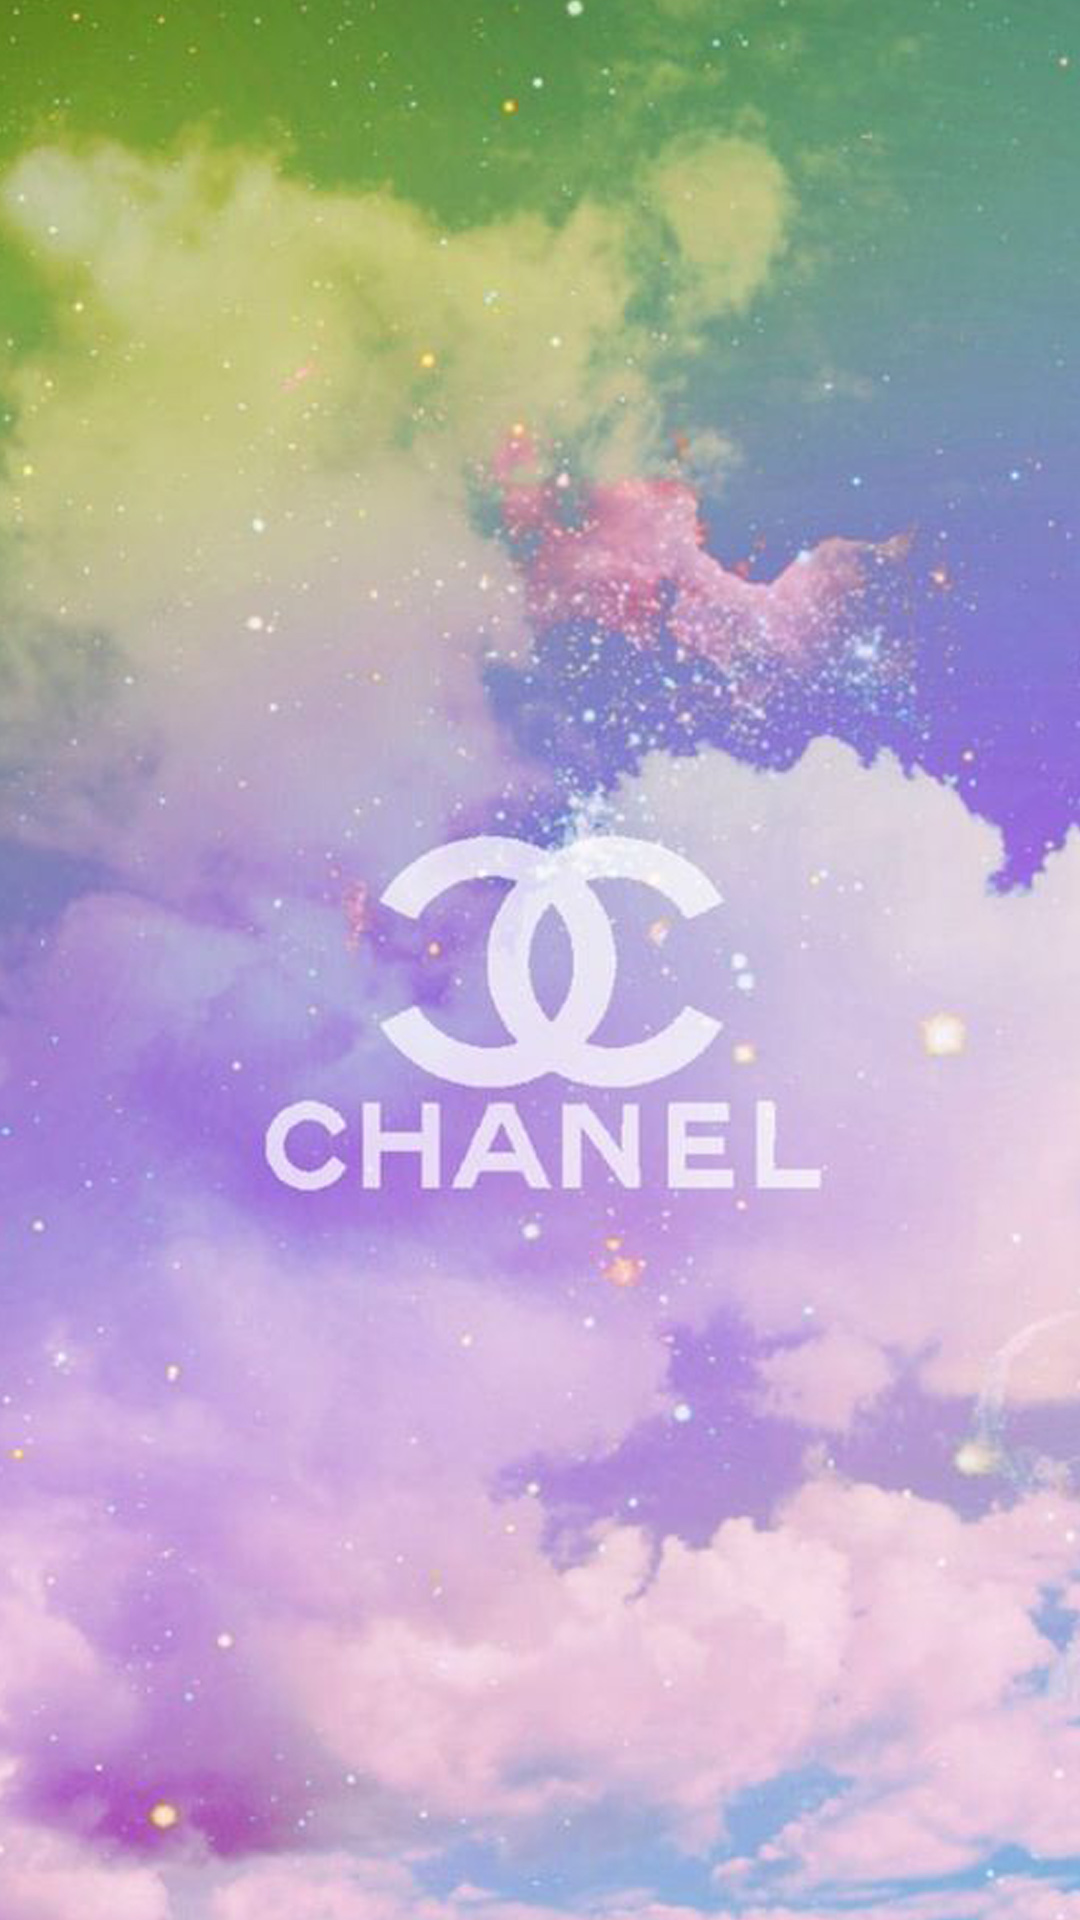 Hãy dành chút thời gian duy nhất để chiêm ngưỡng những hình nền Chanel độc đáo và lộng lẫy tại đây. Bạn sẽ không thể rời mắt khỏi những họa tiết cực kỳ quyến rũ này.